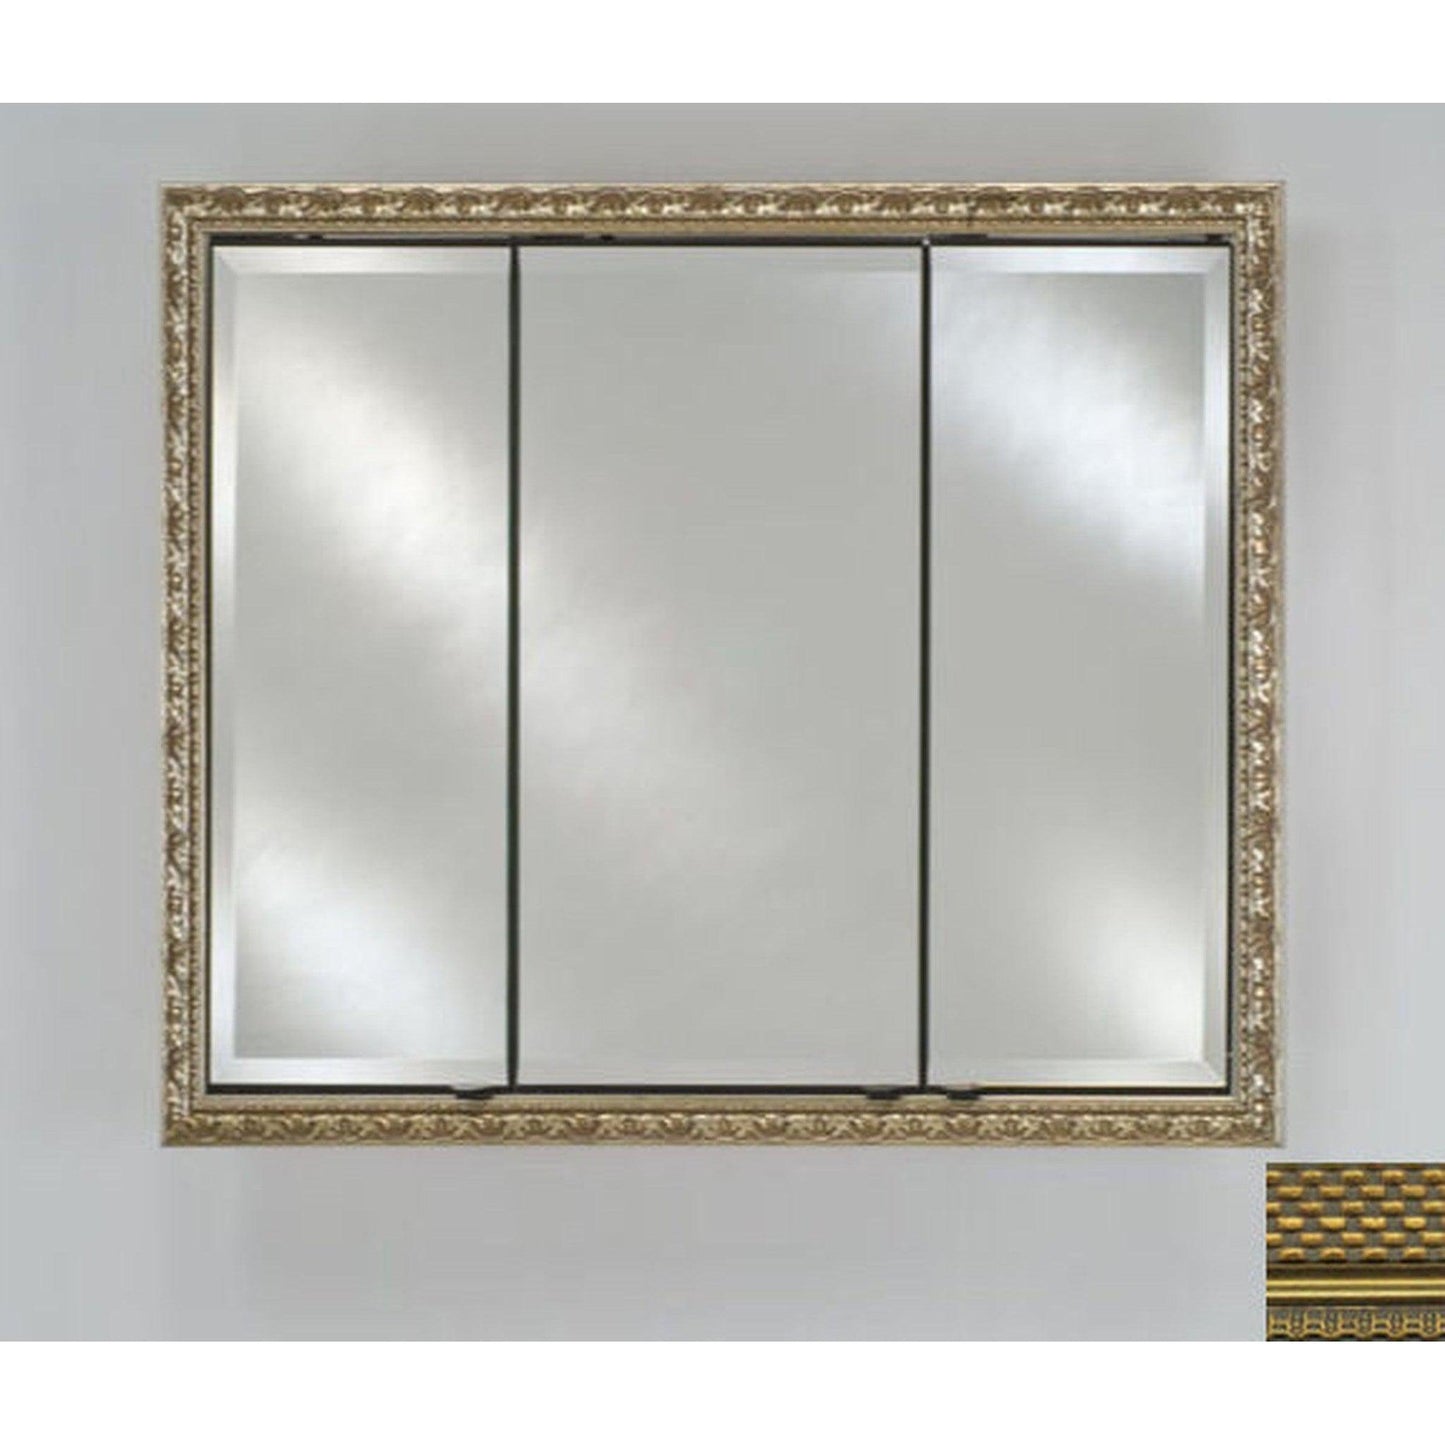 Afina Signature 38" x 30" Elegance Antique Gold Recessed Triple Door Medicine Cabinet With Beveled Edge Mirror